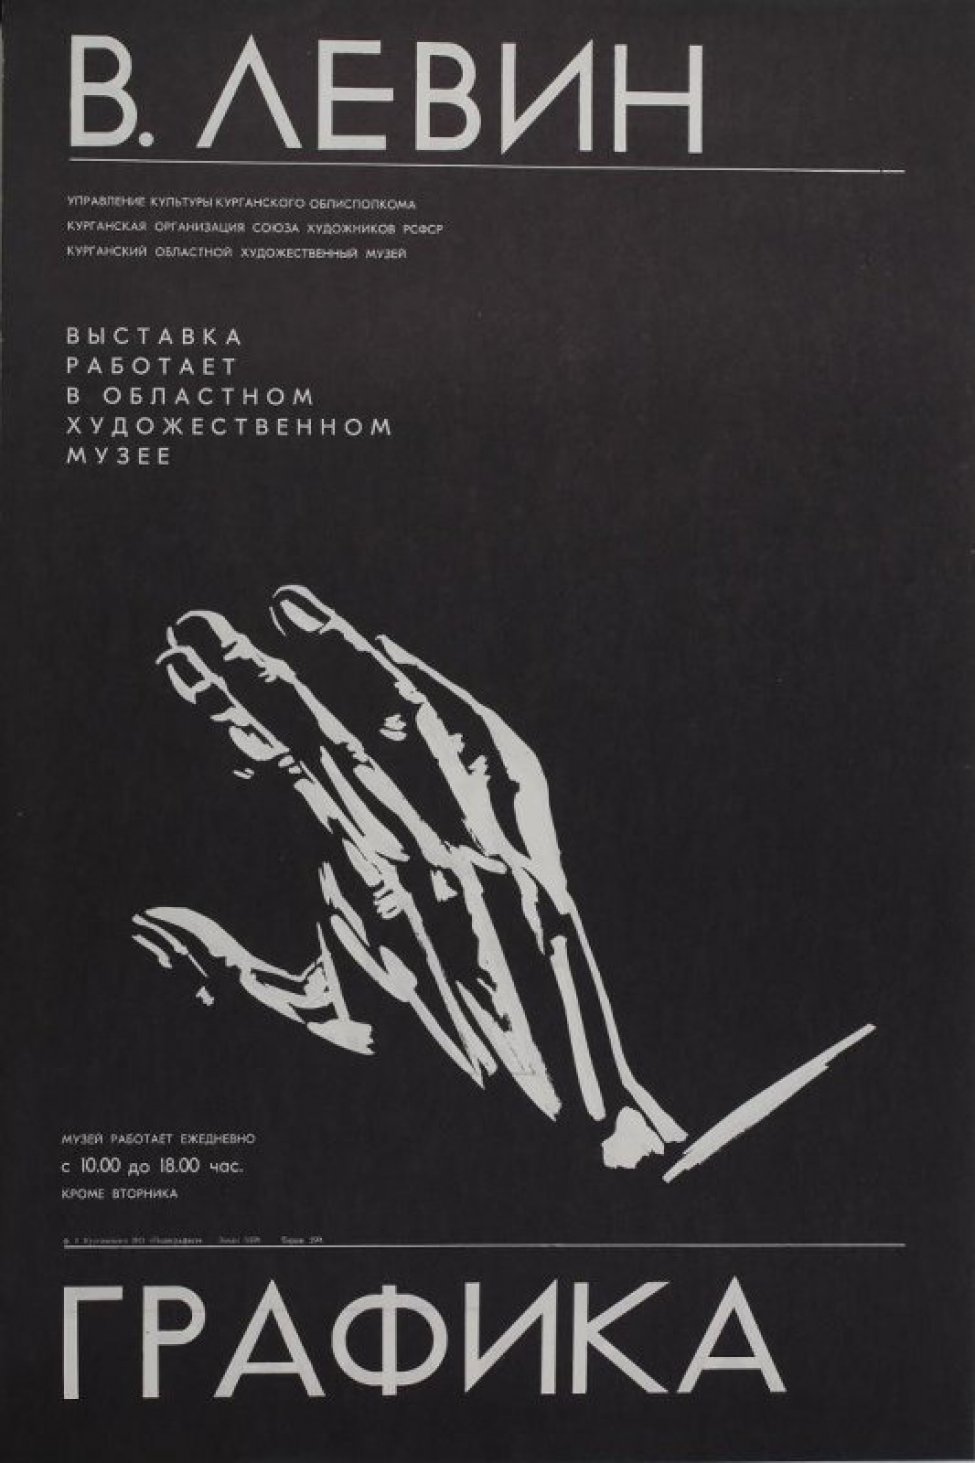 На черном фоне в средней части композиции изображена кисть правой руки человека. Вверху расположены  тексты в 9 строк. В.Левин.Управление культуры.